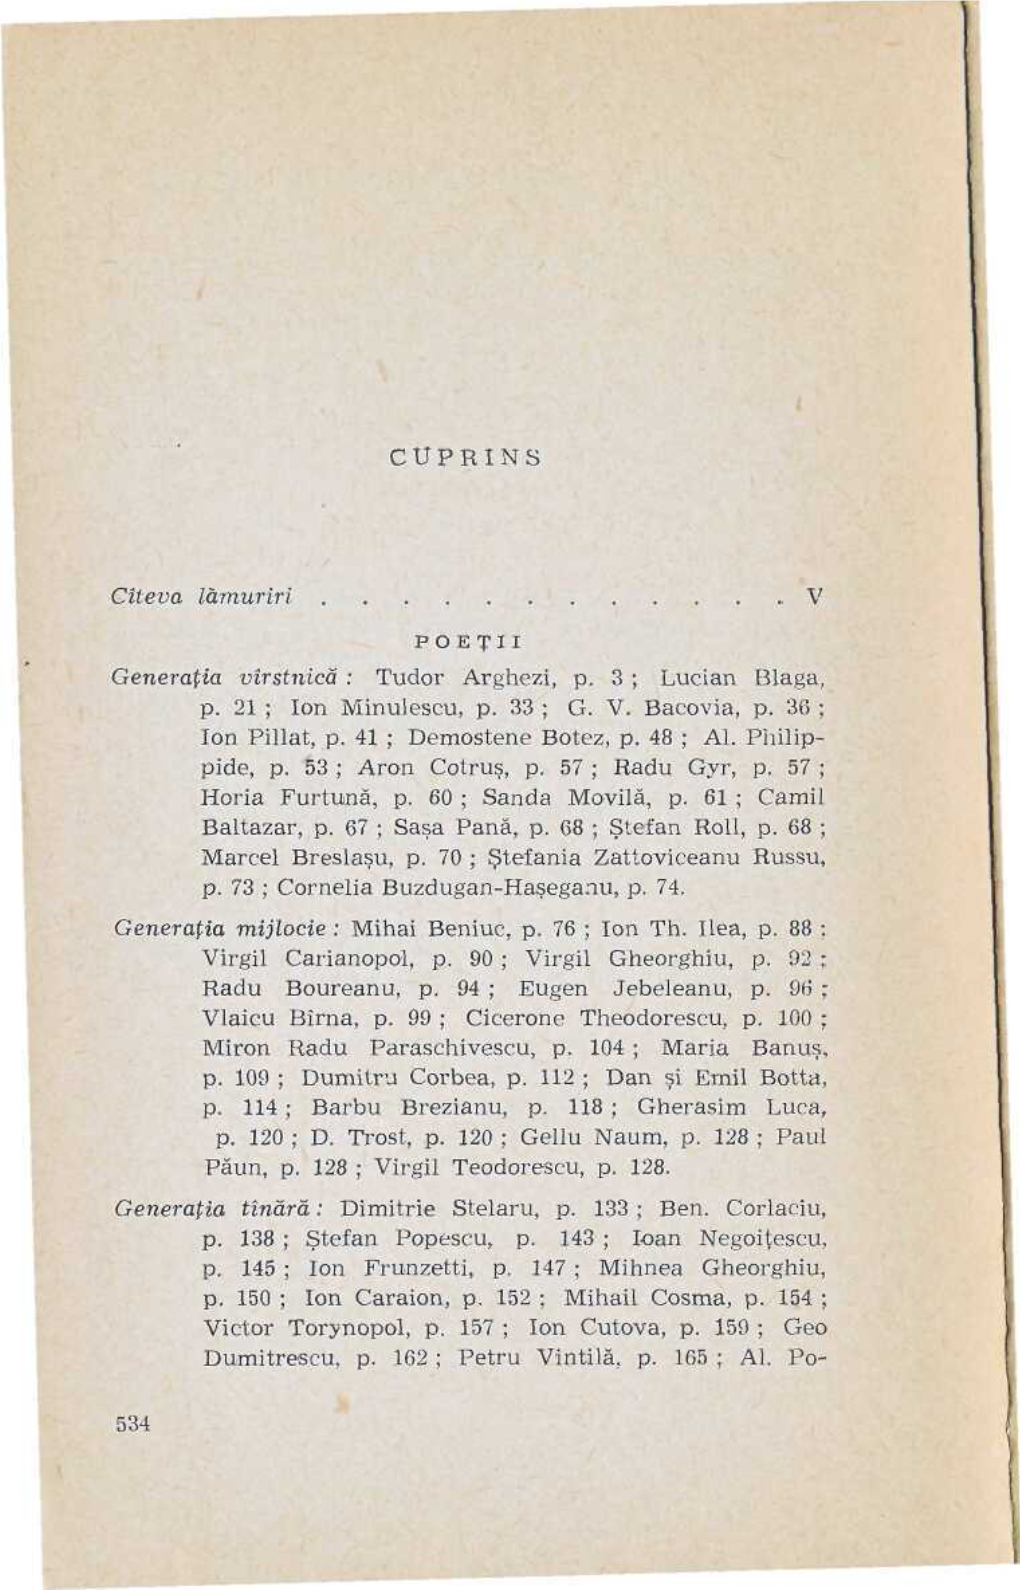 Tudor Arghezi, P. 3 ; Lucian Blaga, P. 21 ; Ion Minulescu, P